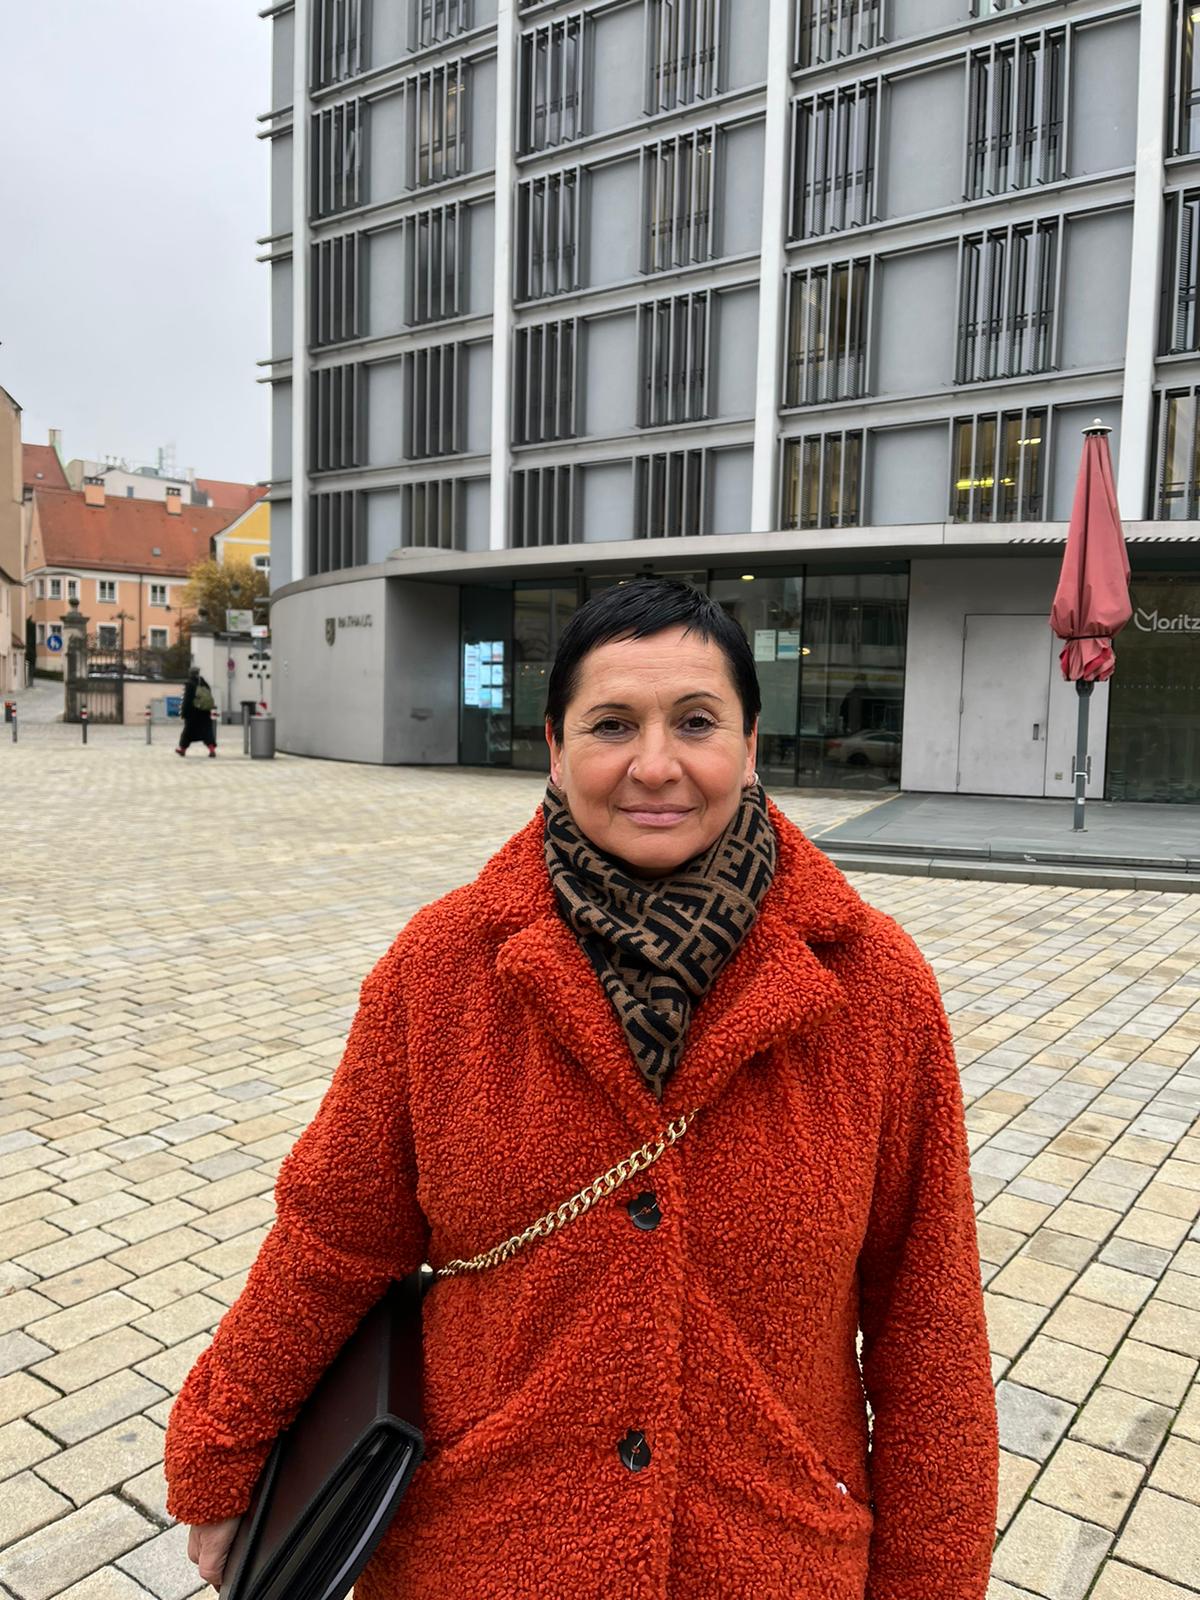 O româncă angajată la o primărie din Germania luptă pentru a face o imagine bună a conaționalilor săi